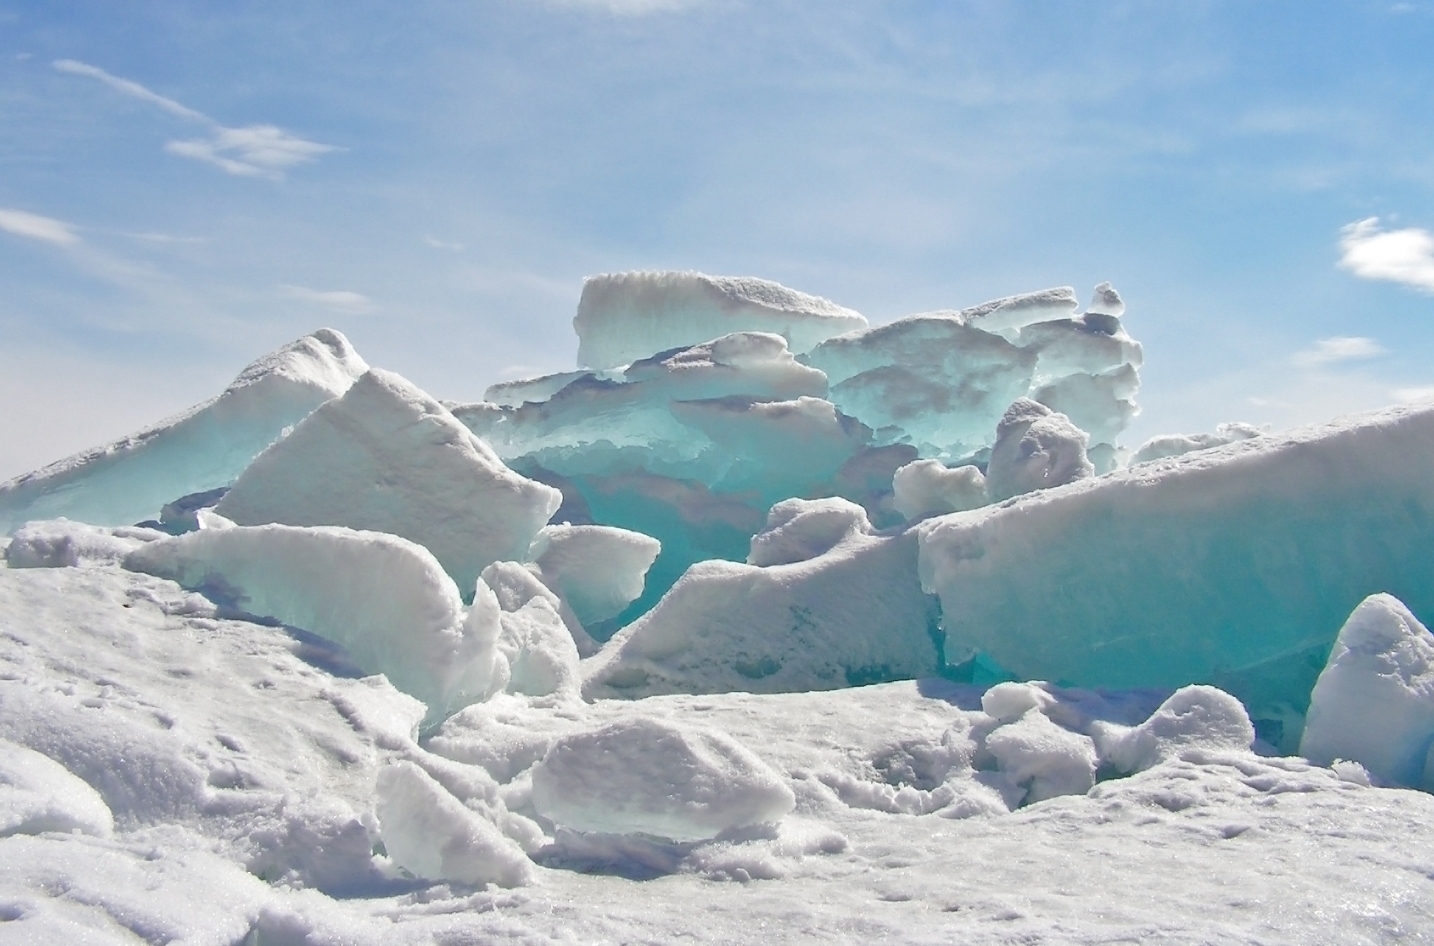 Бирюза байкальских льдов